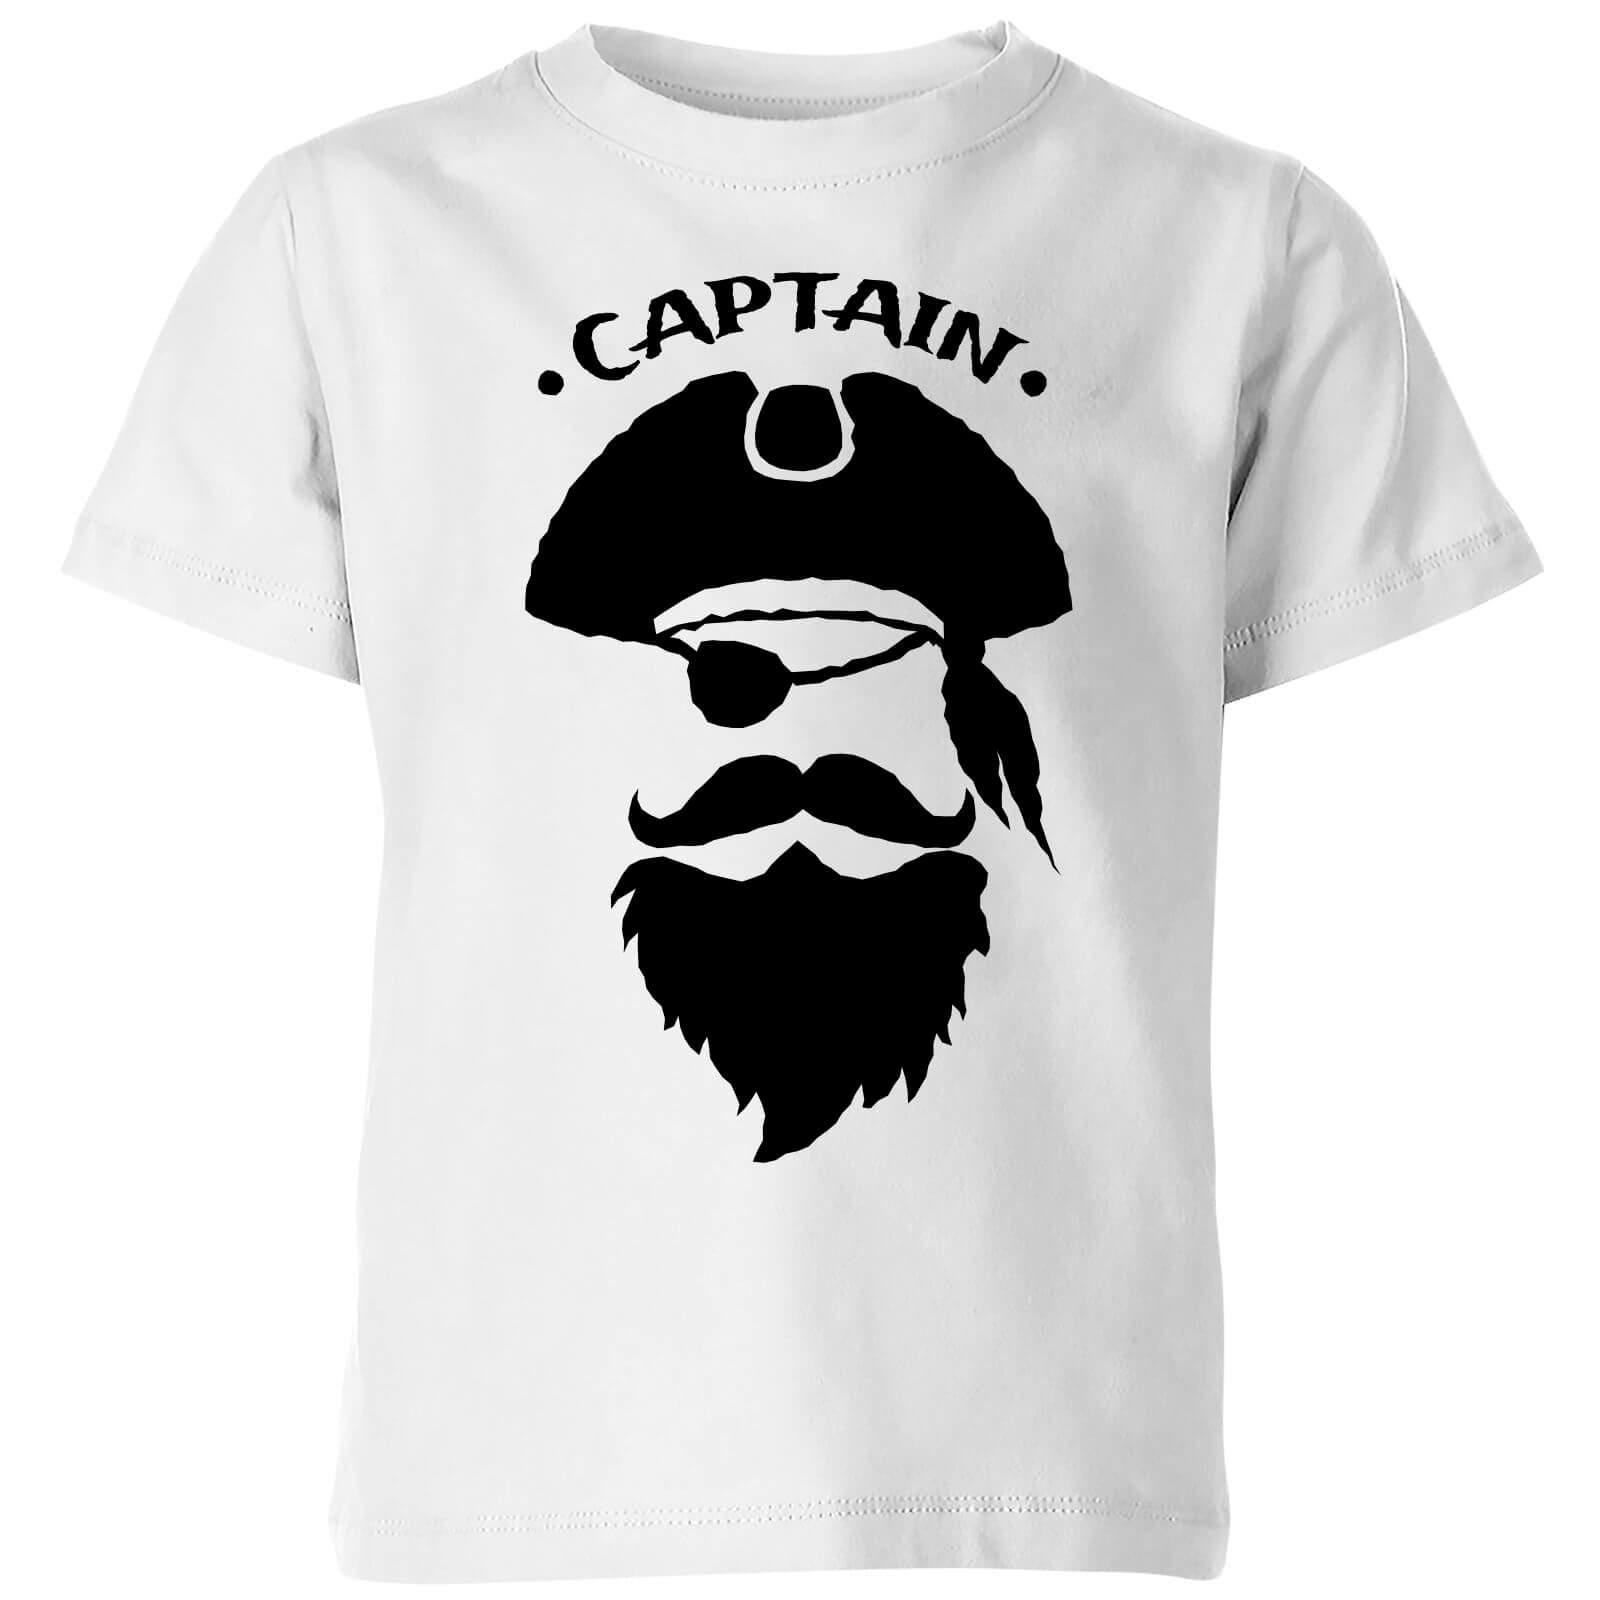 Own Brand Captain Kids T-Shirt - White - 9-10 Years - White